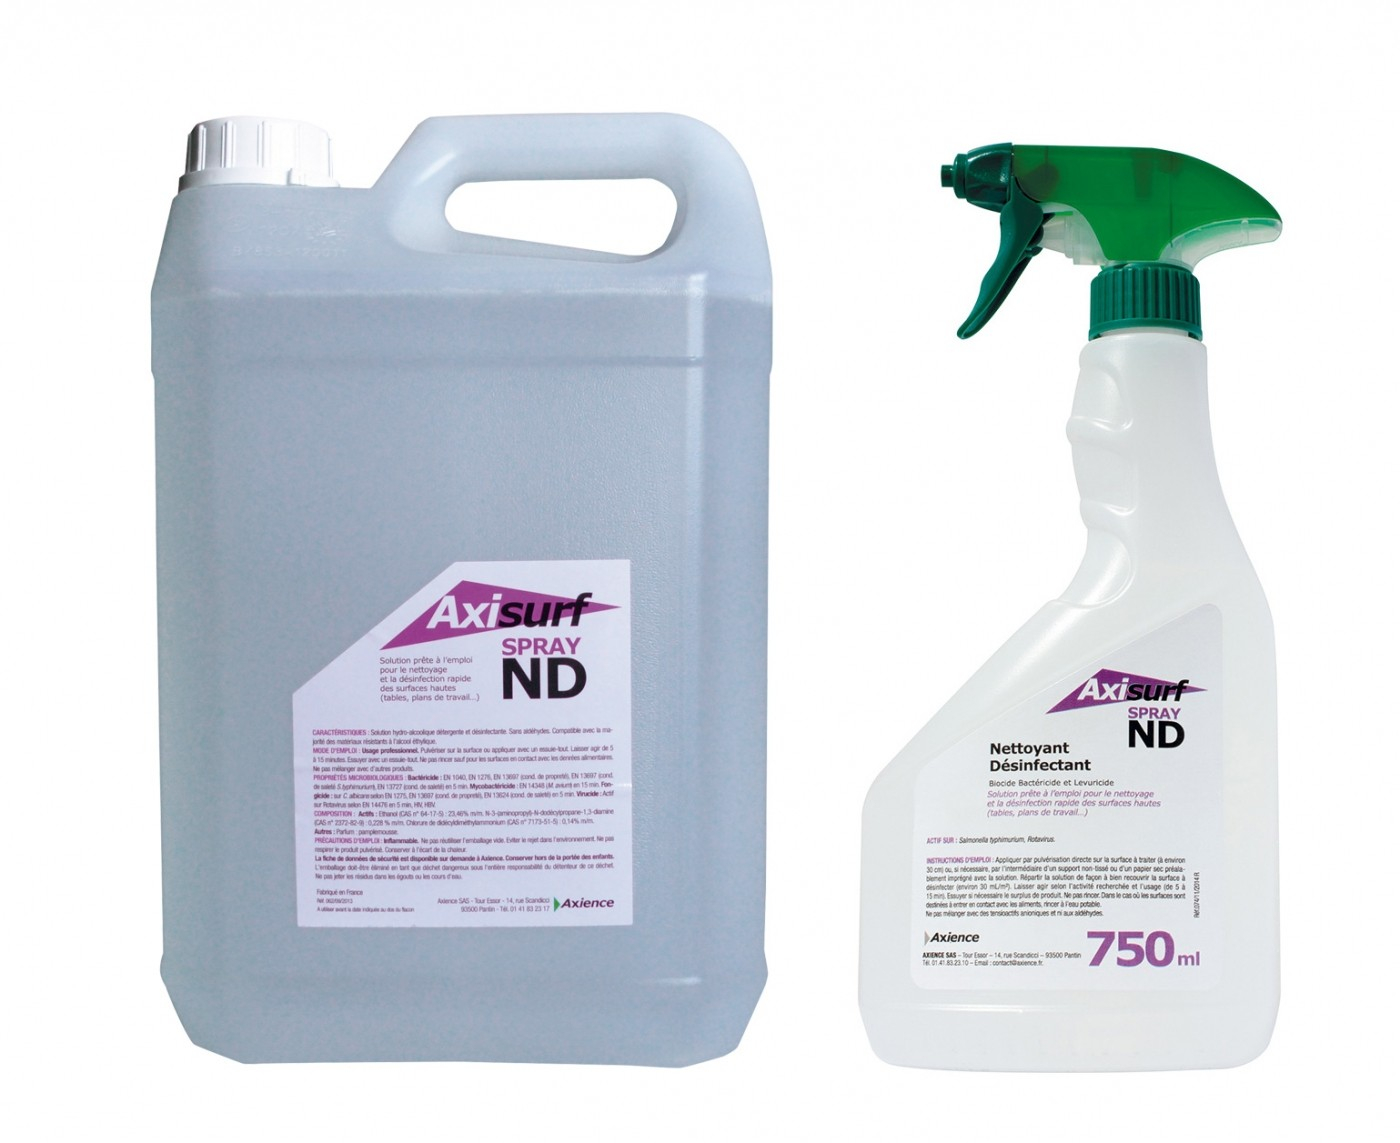 AXIENCE Axisurf ND Spray - Solución hidro-alcohólica limpiadora y desinfectante